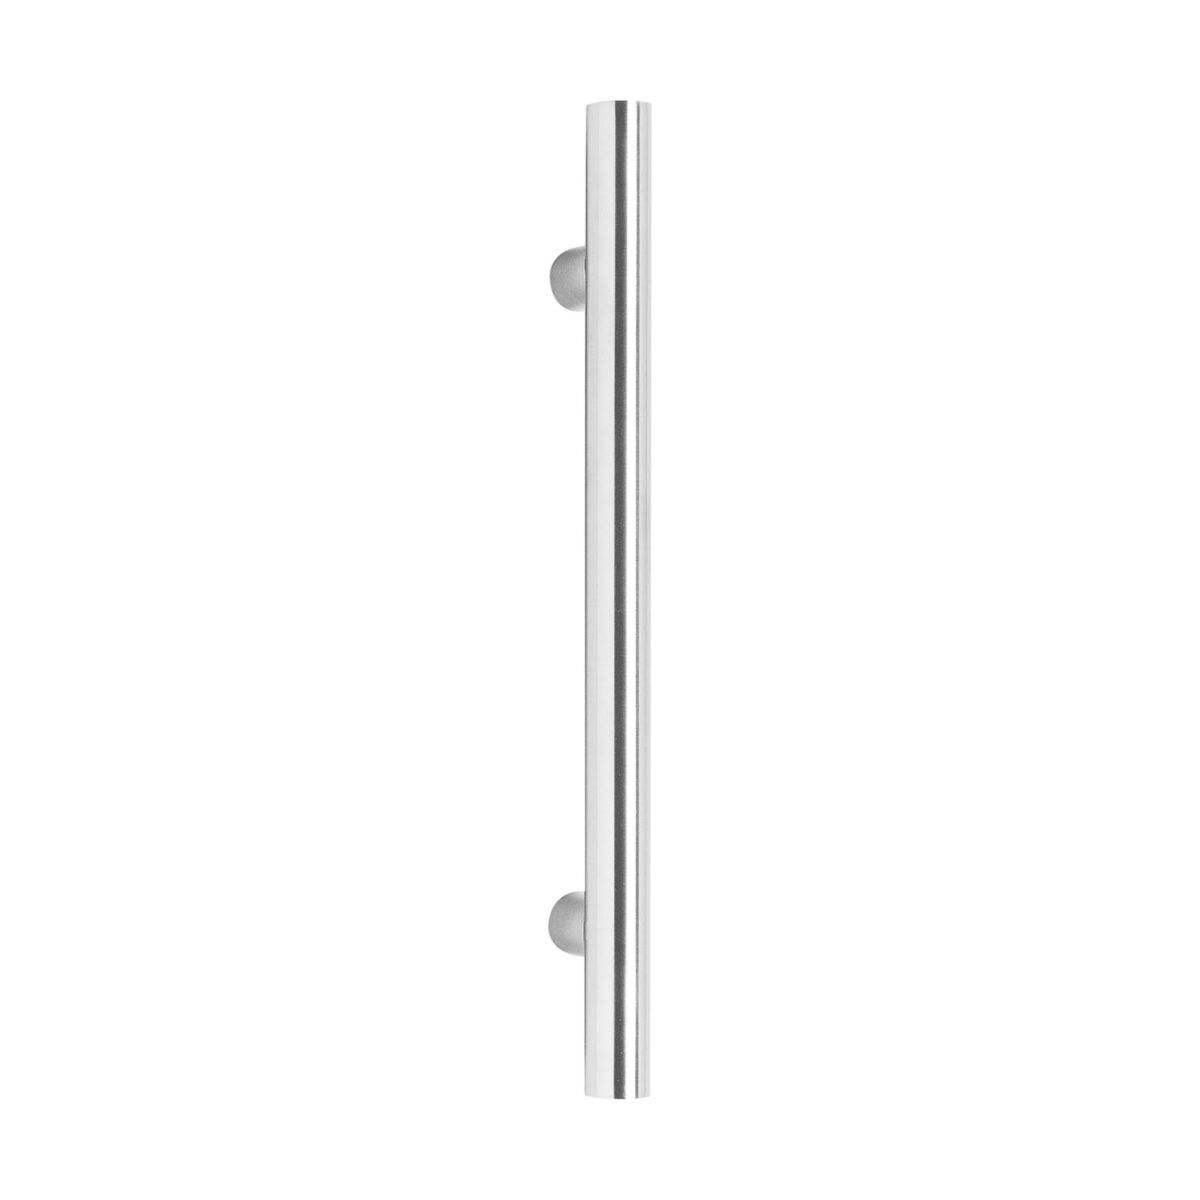 Intersteel Door handles 700 mm T shape brushed stainless steel 65 mm